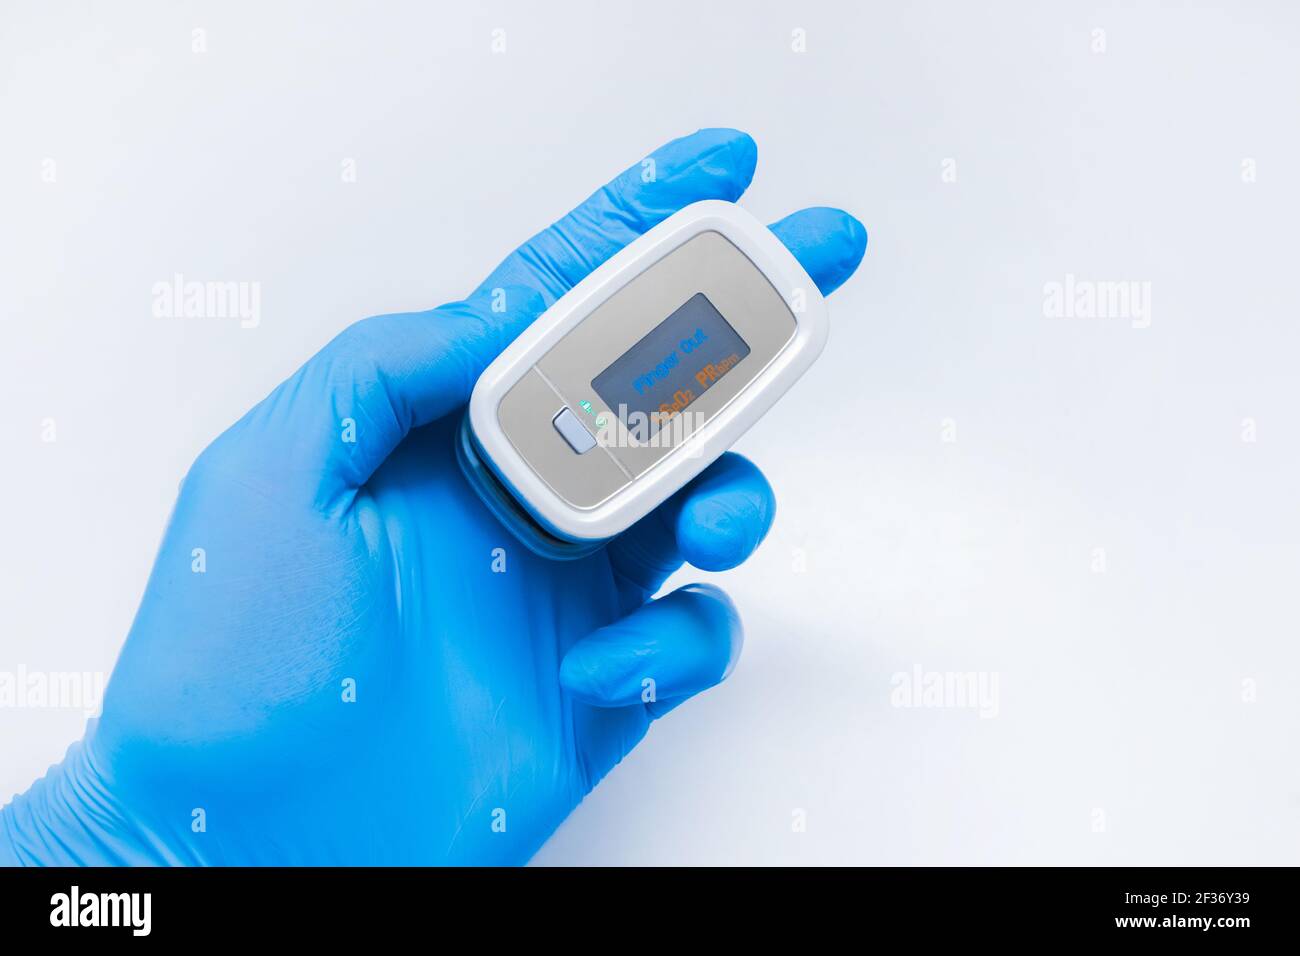 Arzt Hand in schützende medizinische Handschuhe halten moderne Fingerspitze Pulsoximeter auf einem weißen Hintergrund, Nahaufnahme. Stockfoto